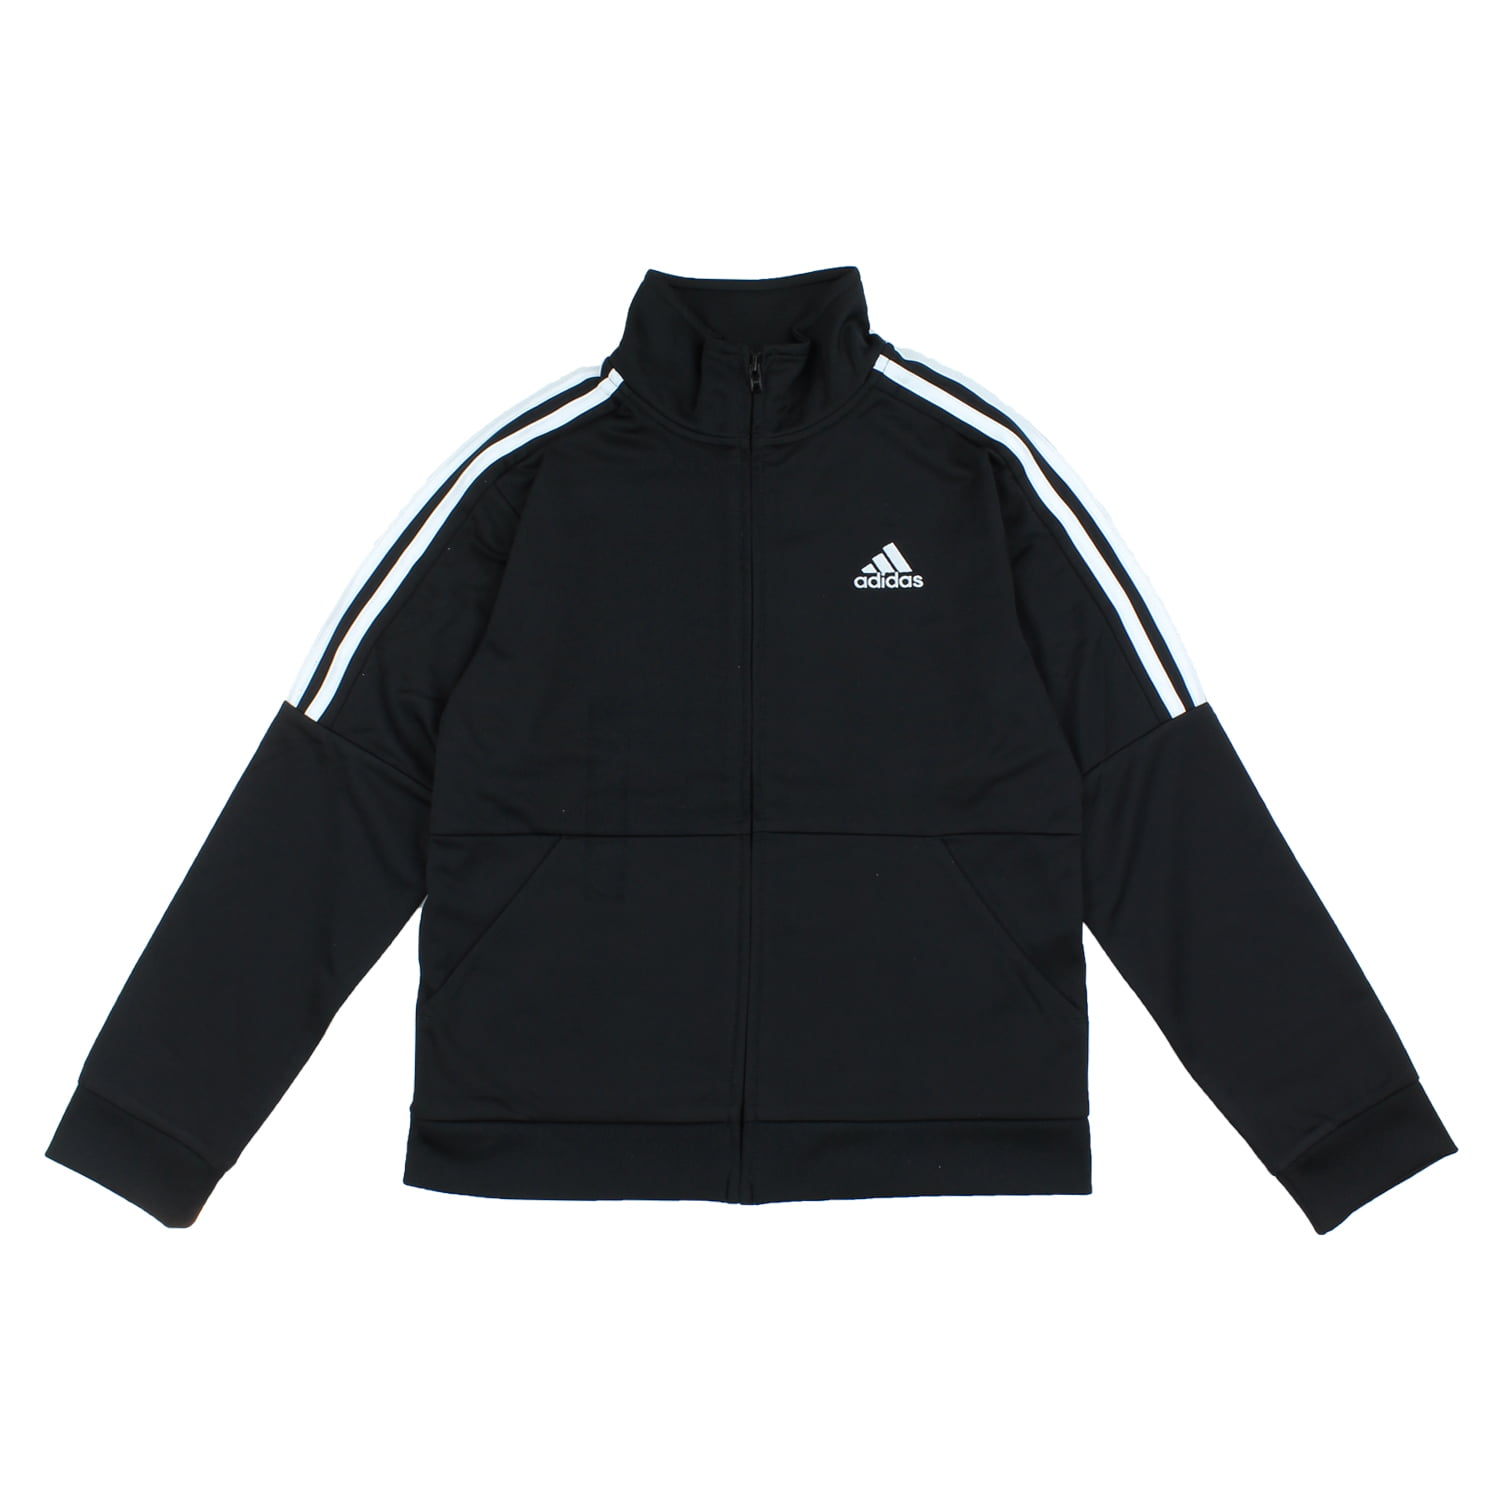 Adidas Boys Youth Iconic Track Jacket 